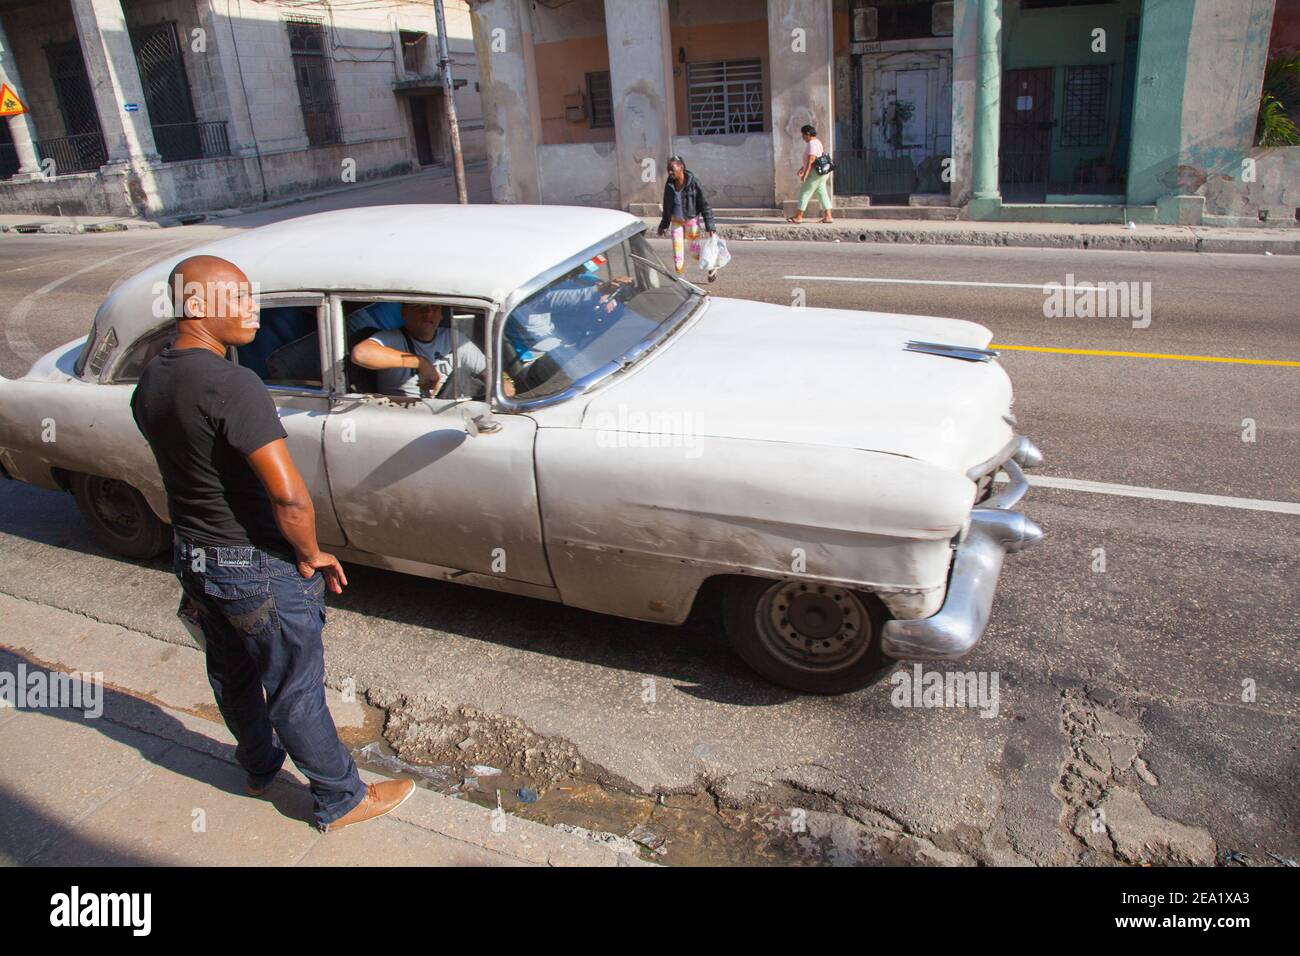 LA HAVANE, CUBA - 03 06 2013: Inconnu cubain près d'un taxi rétro dans les rues d'un quartier dangereux de Serrra Banque D'Images